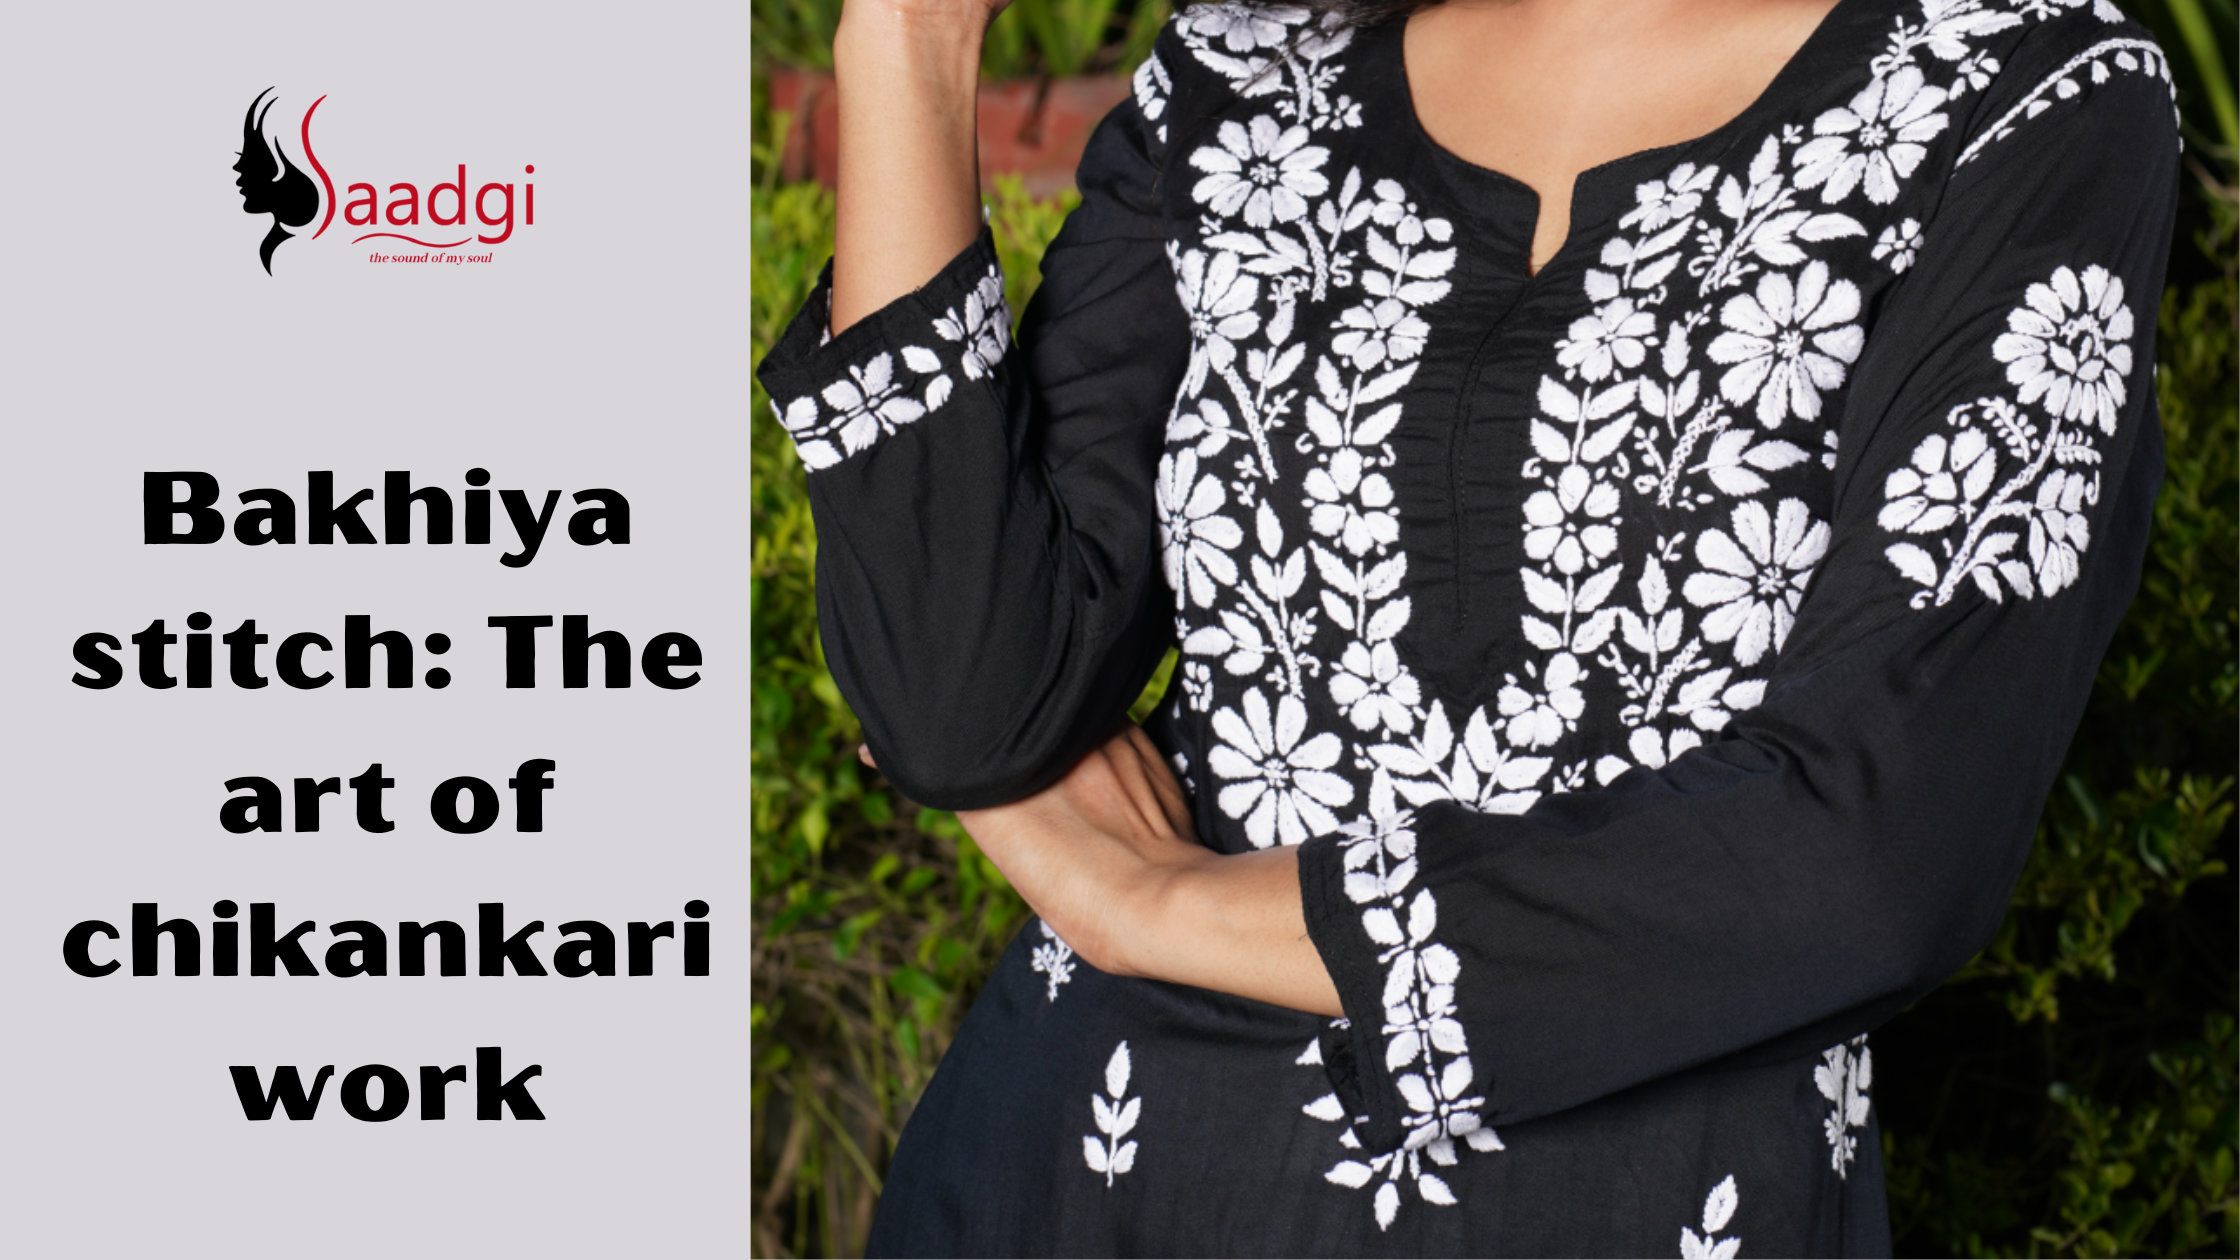 Bakhiya stitch: The art of chikankari work